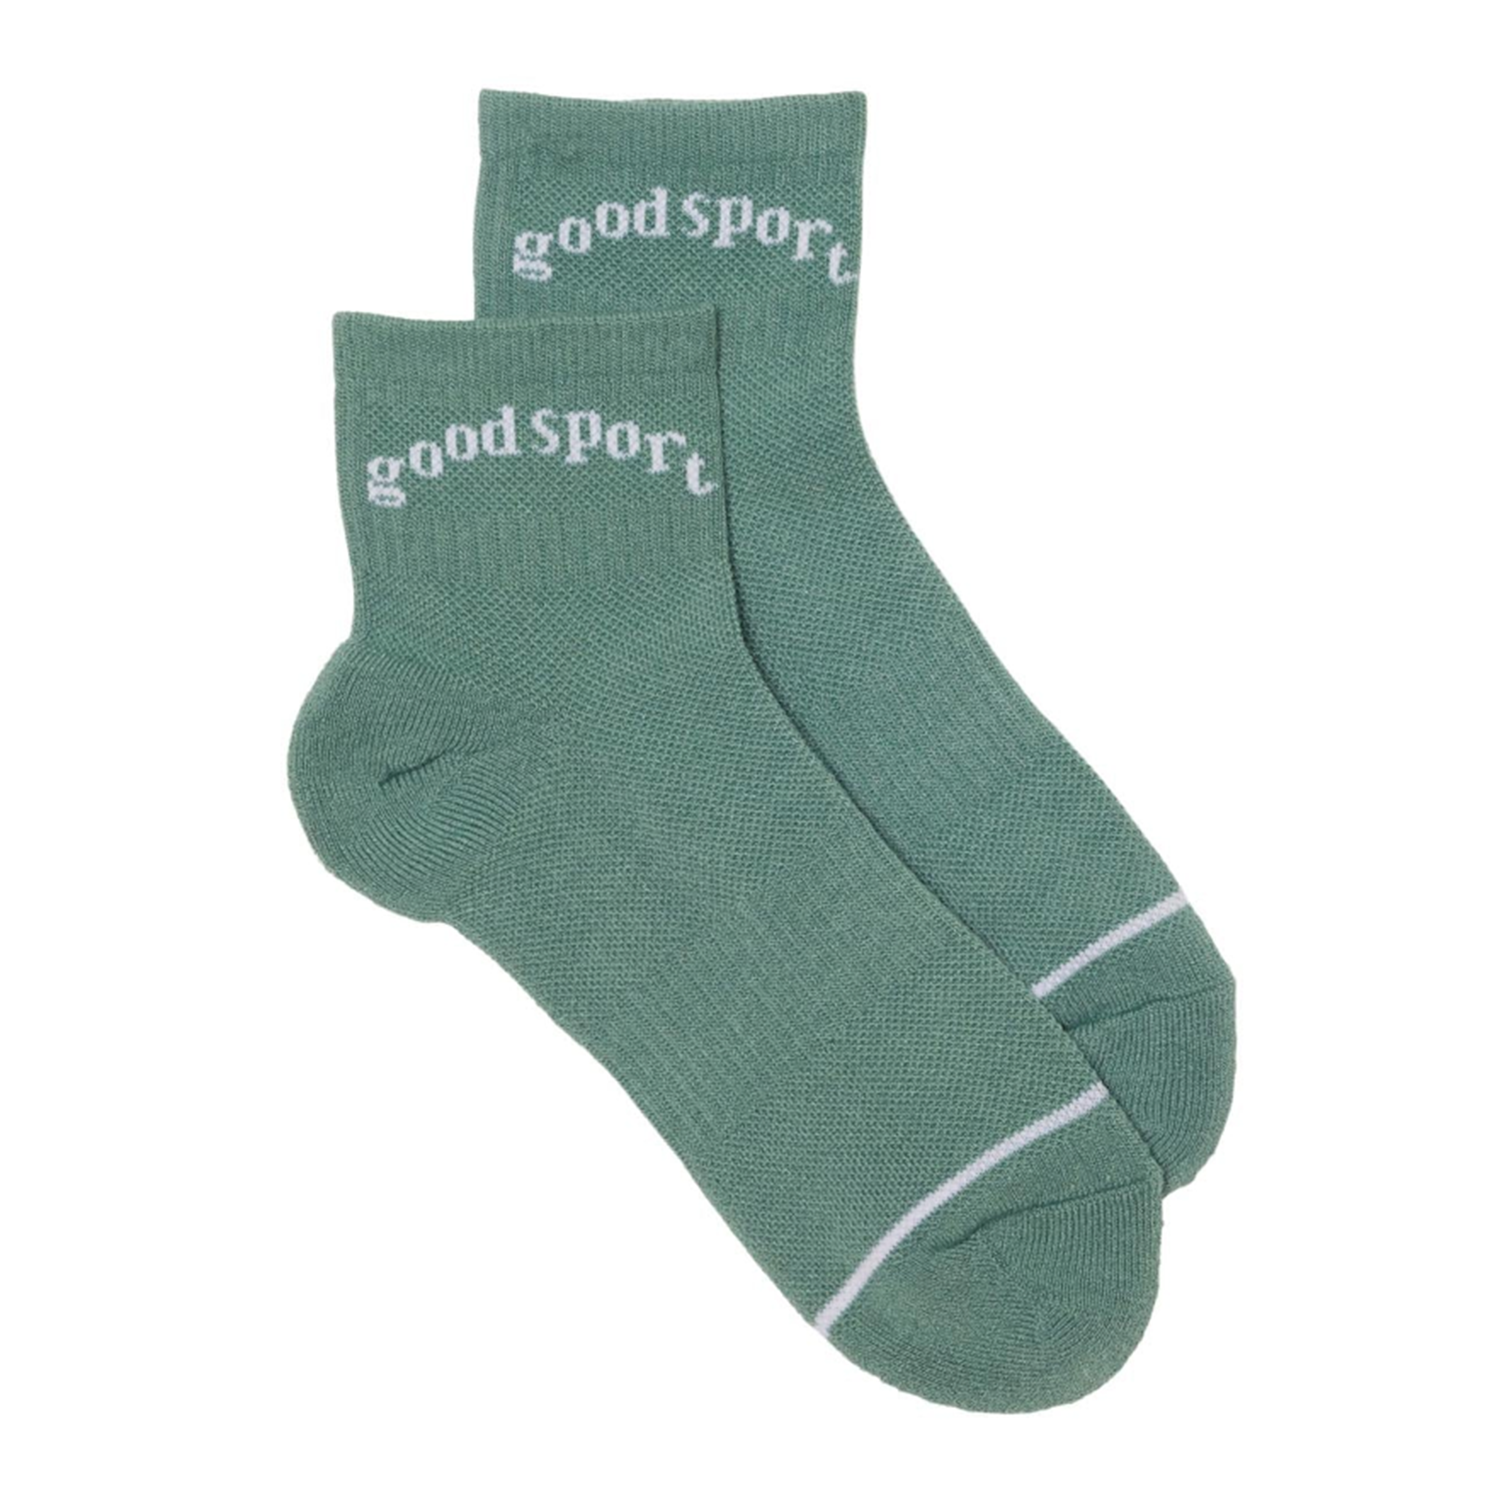 Green Crew Socks